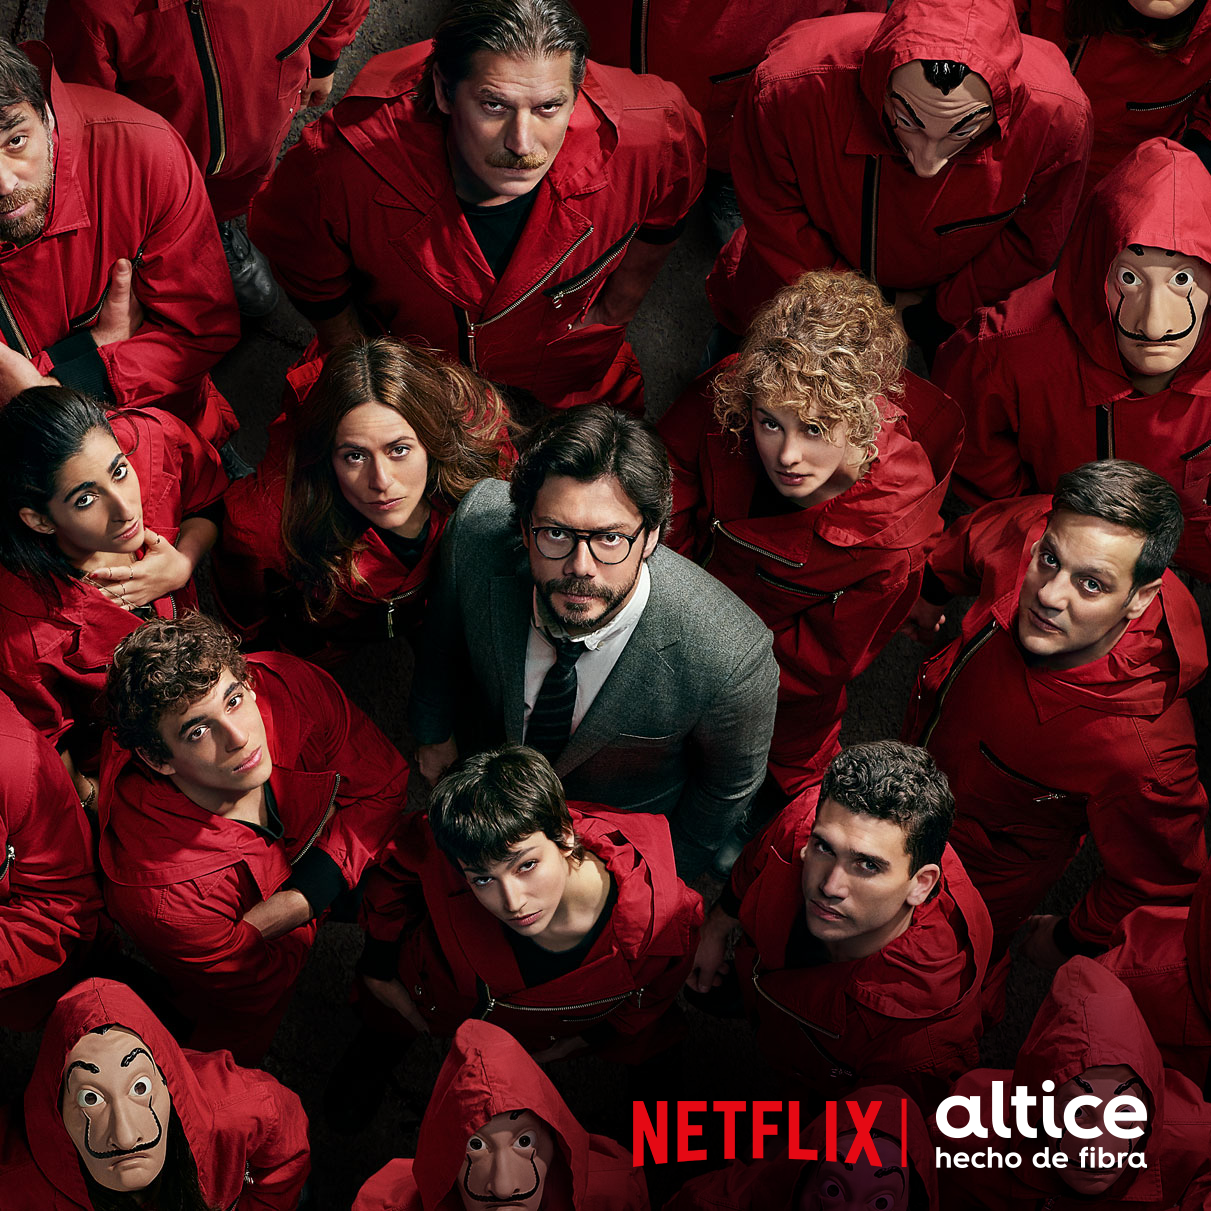 Altice incluye acceso a Netflix desde su servicio de TV por cable desde cualquier televisor